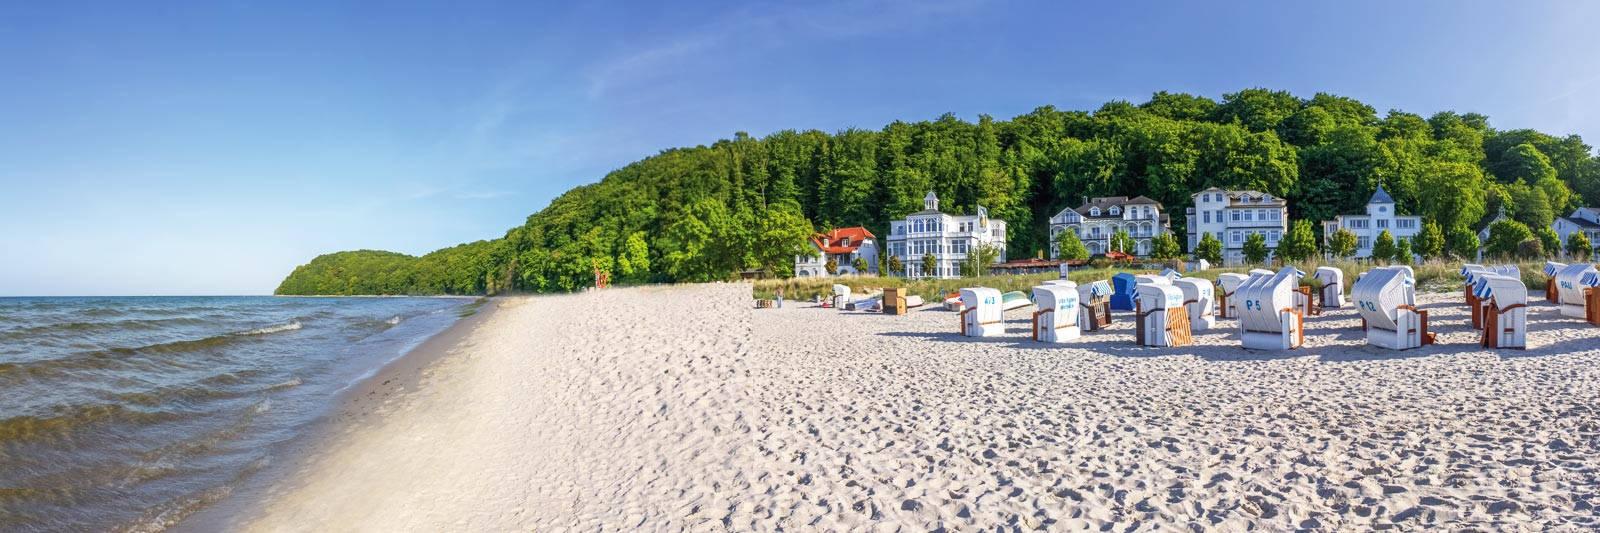 38.110 Ferienwohnungen und Ferienhäuser in Mecklenburg-Vorpommern - tourist-online.de